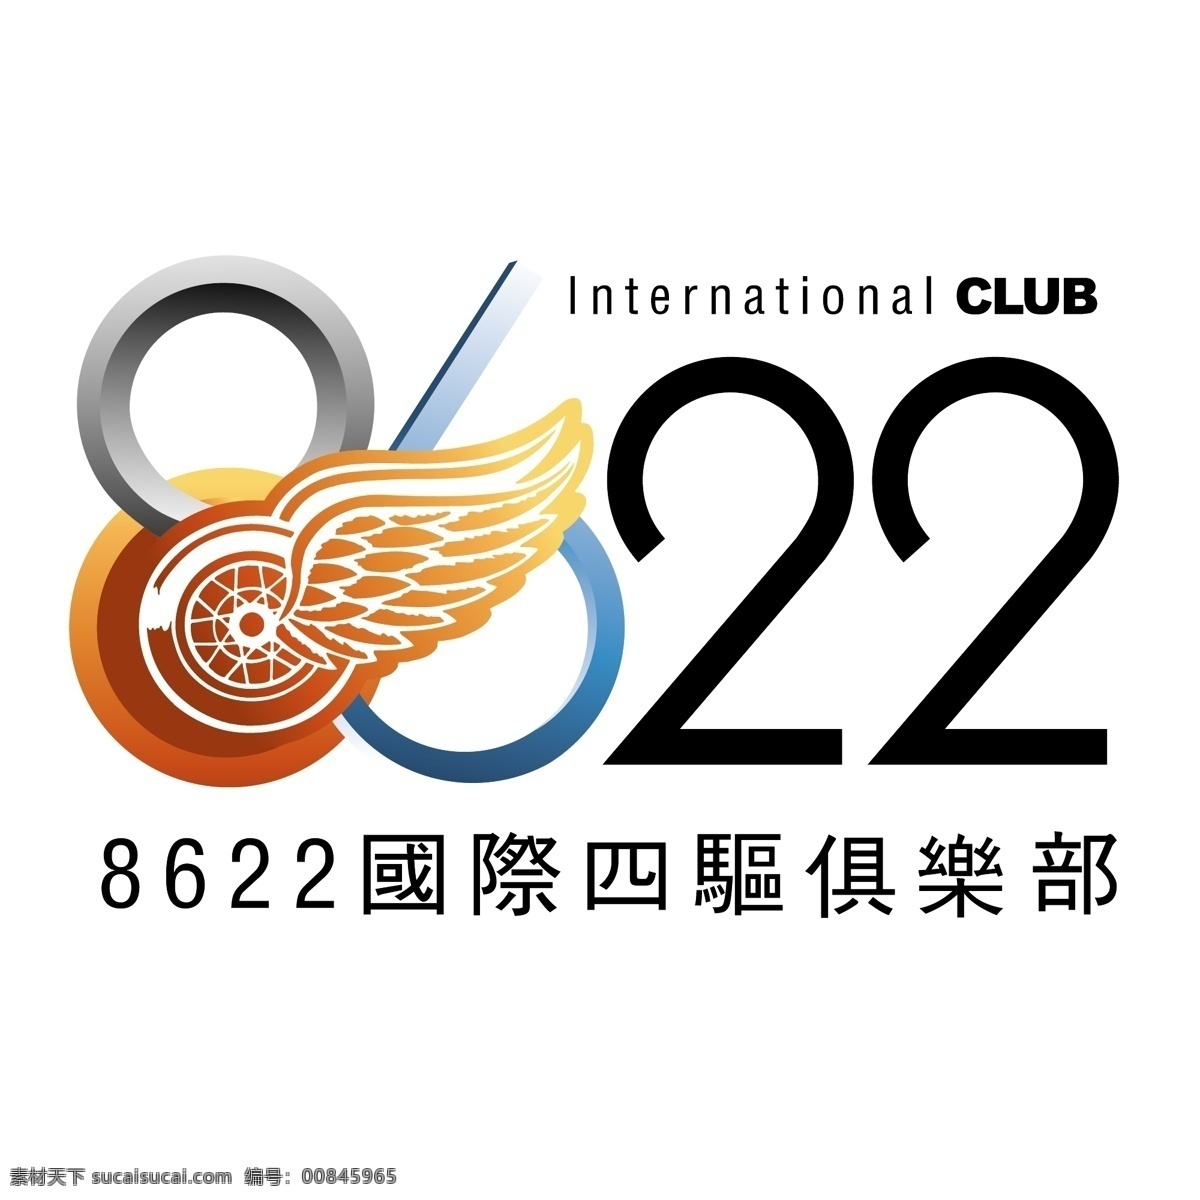 国际 四 驱 俱乐部 logo 红色logo 立体logo 图案设计 标识标志 字体设计 矢量图